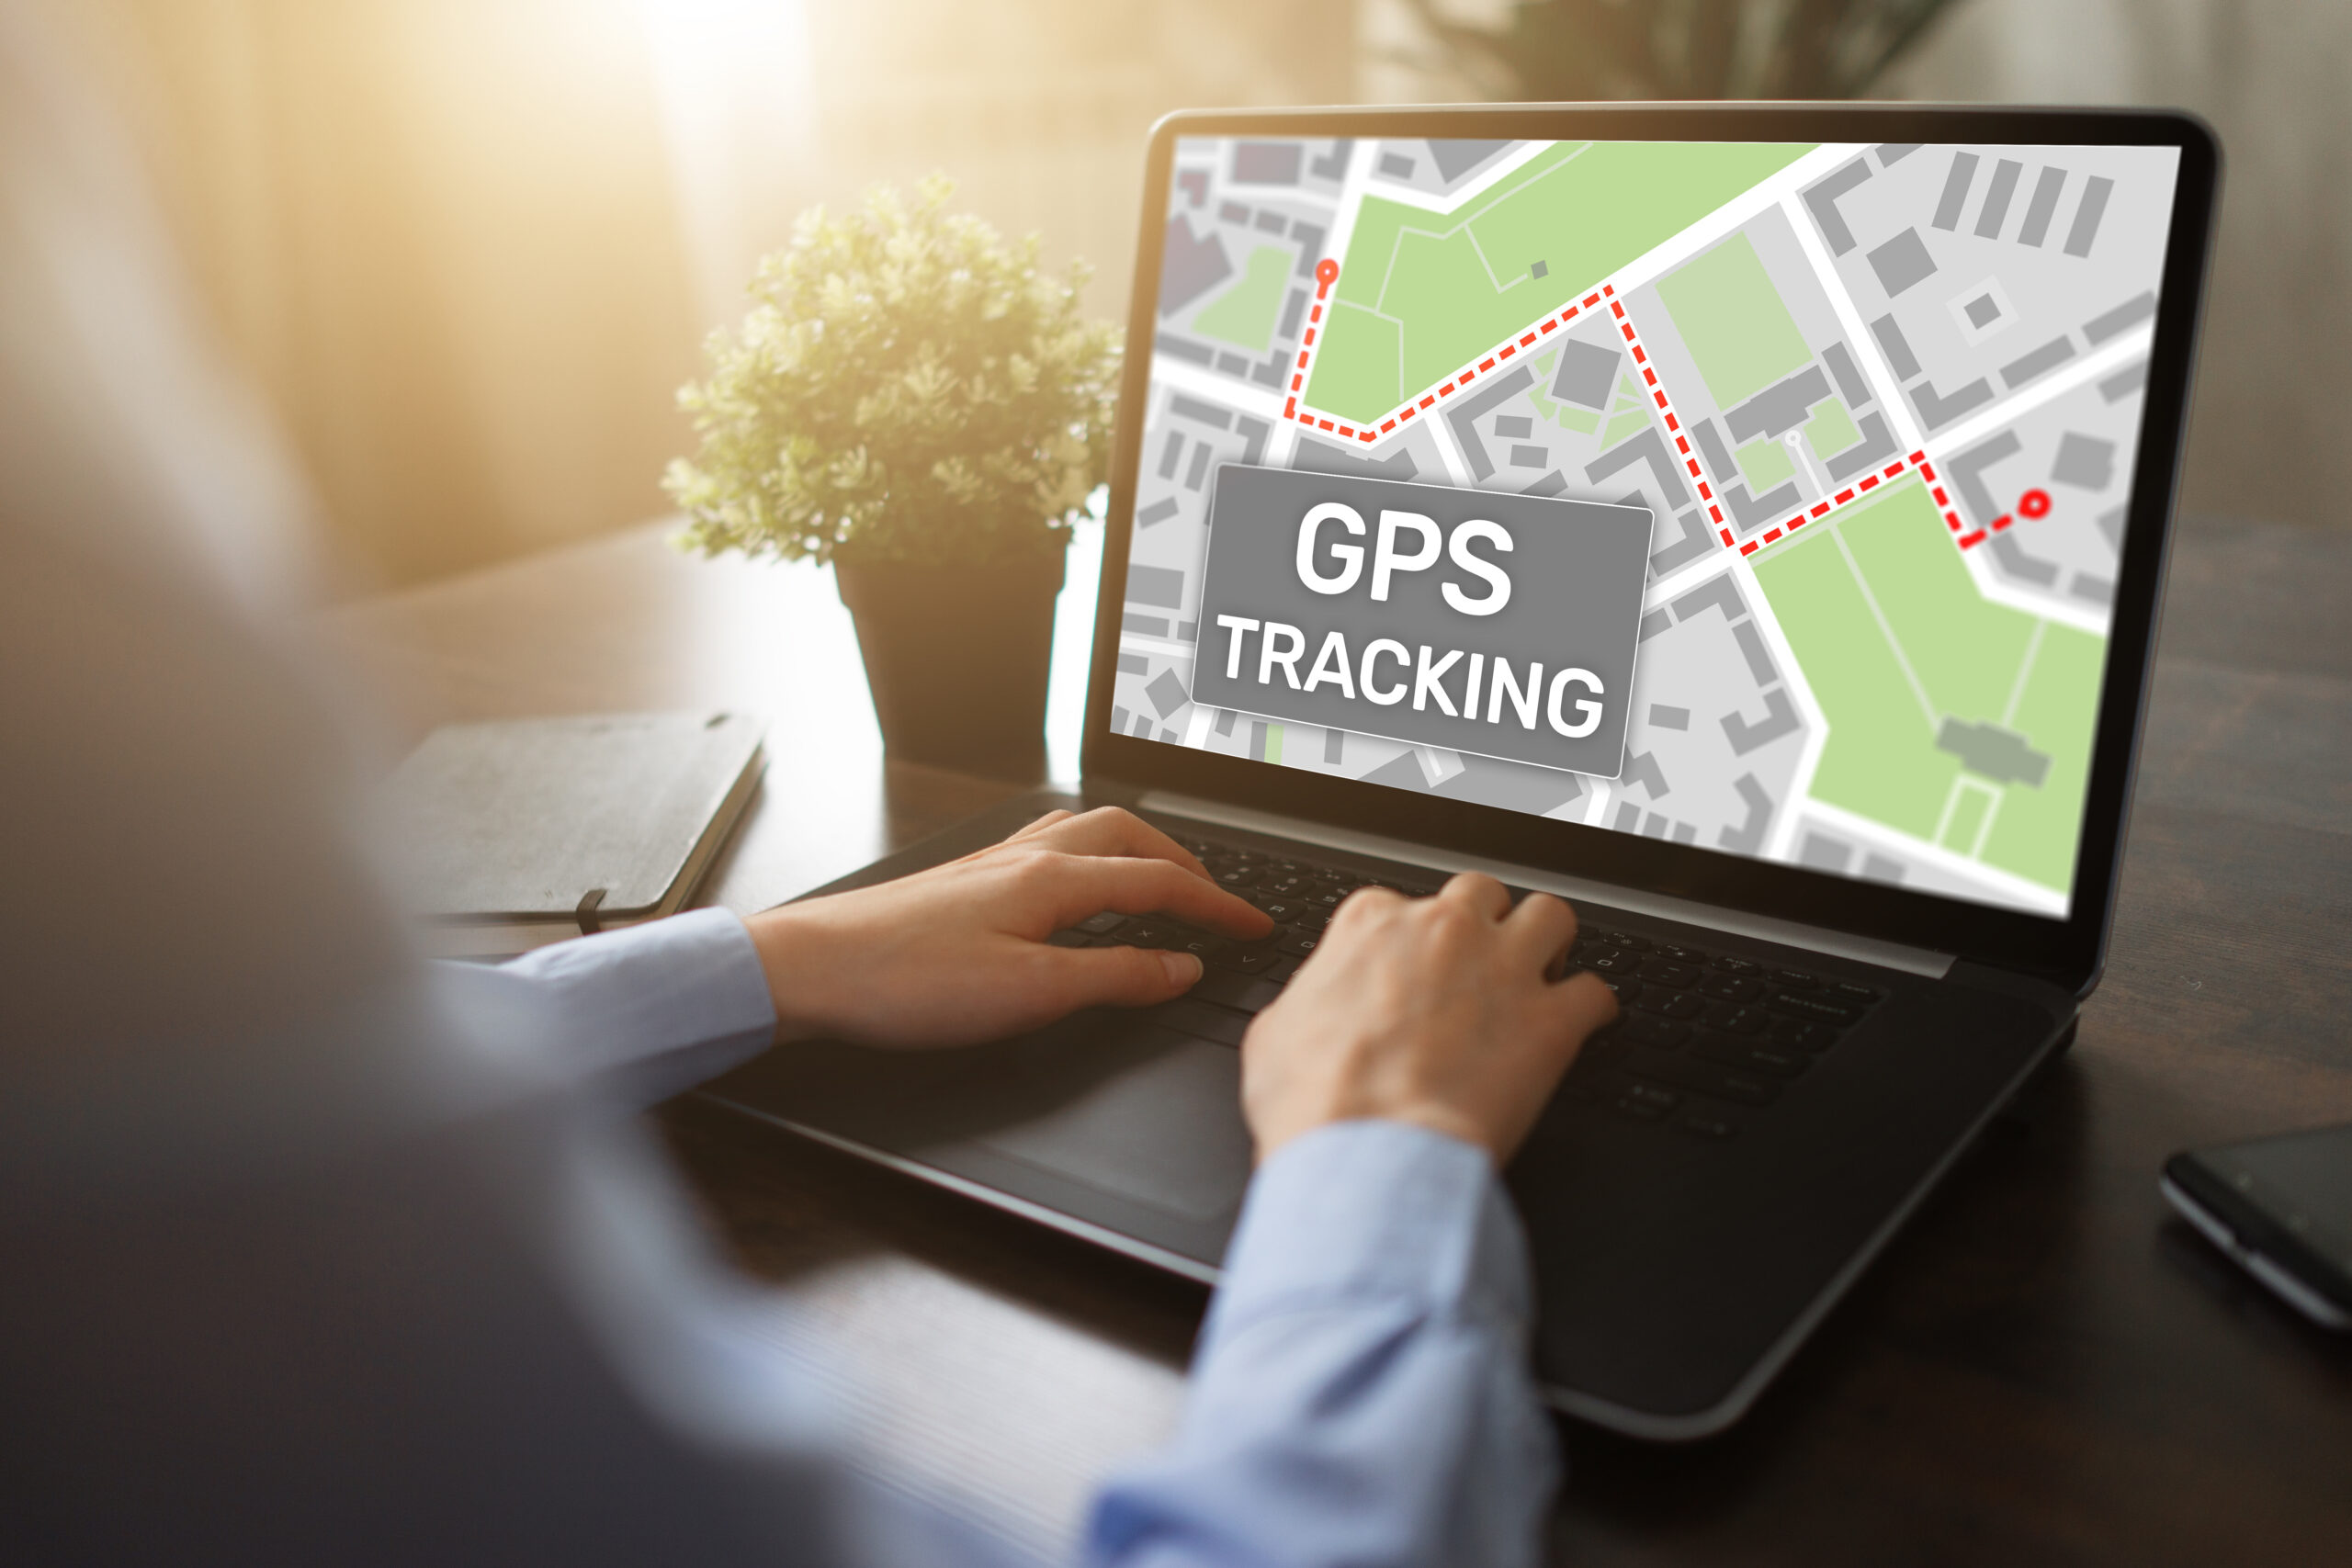 GPSを導入しているポスティング会社は安心?